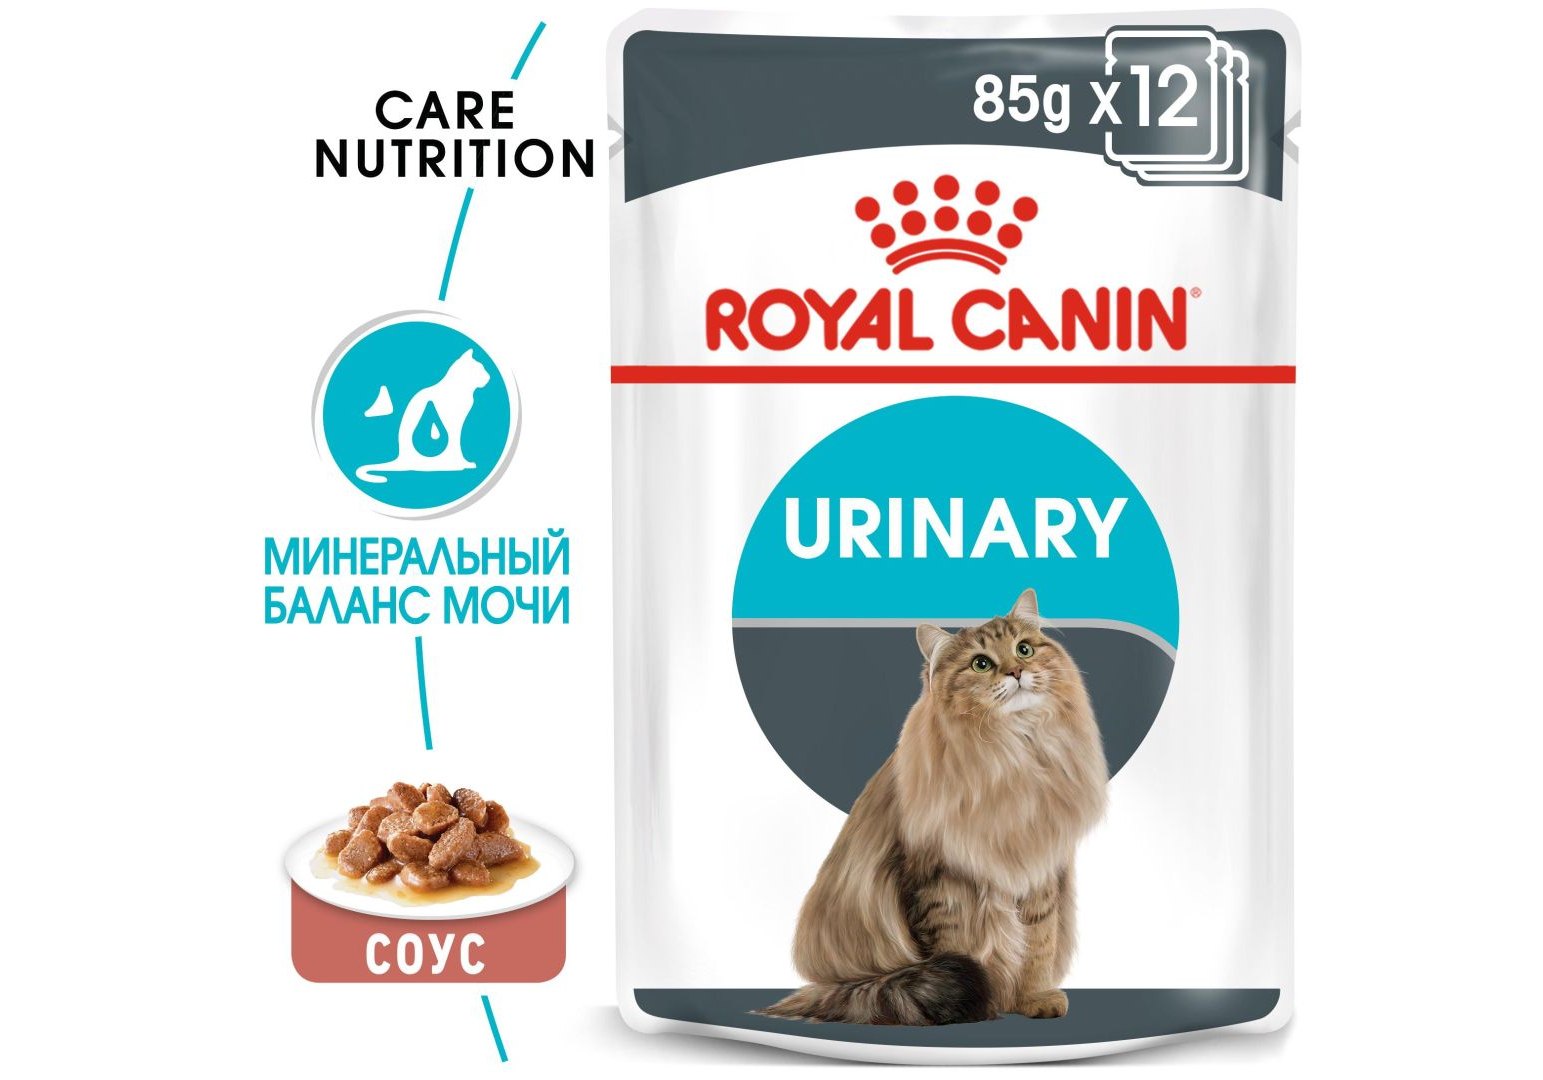 Royal Canin Urinary Care / Влажный корм (Консервы-Паучи) Роял Канин Уринари  Кэа для кошек Профилактика Мочекаменных болезней (цена за упаковку) 85г х  12шт купить в Москве по низкой цене 1 070₽ |